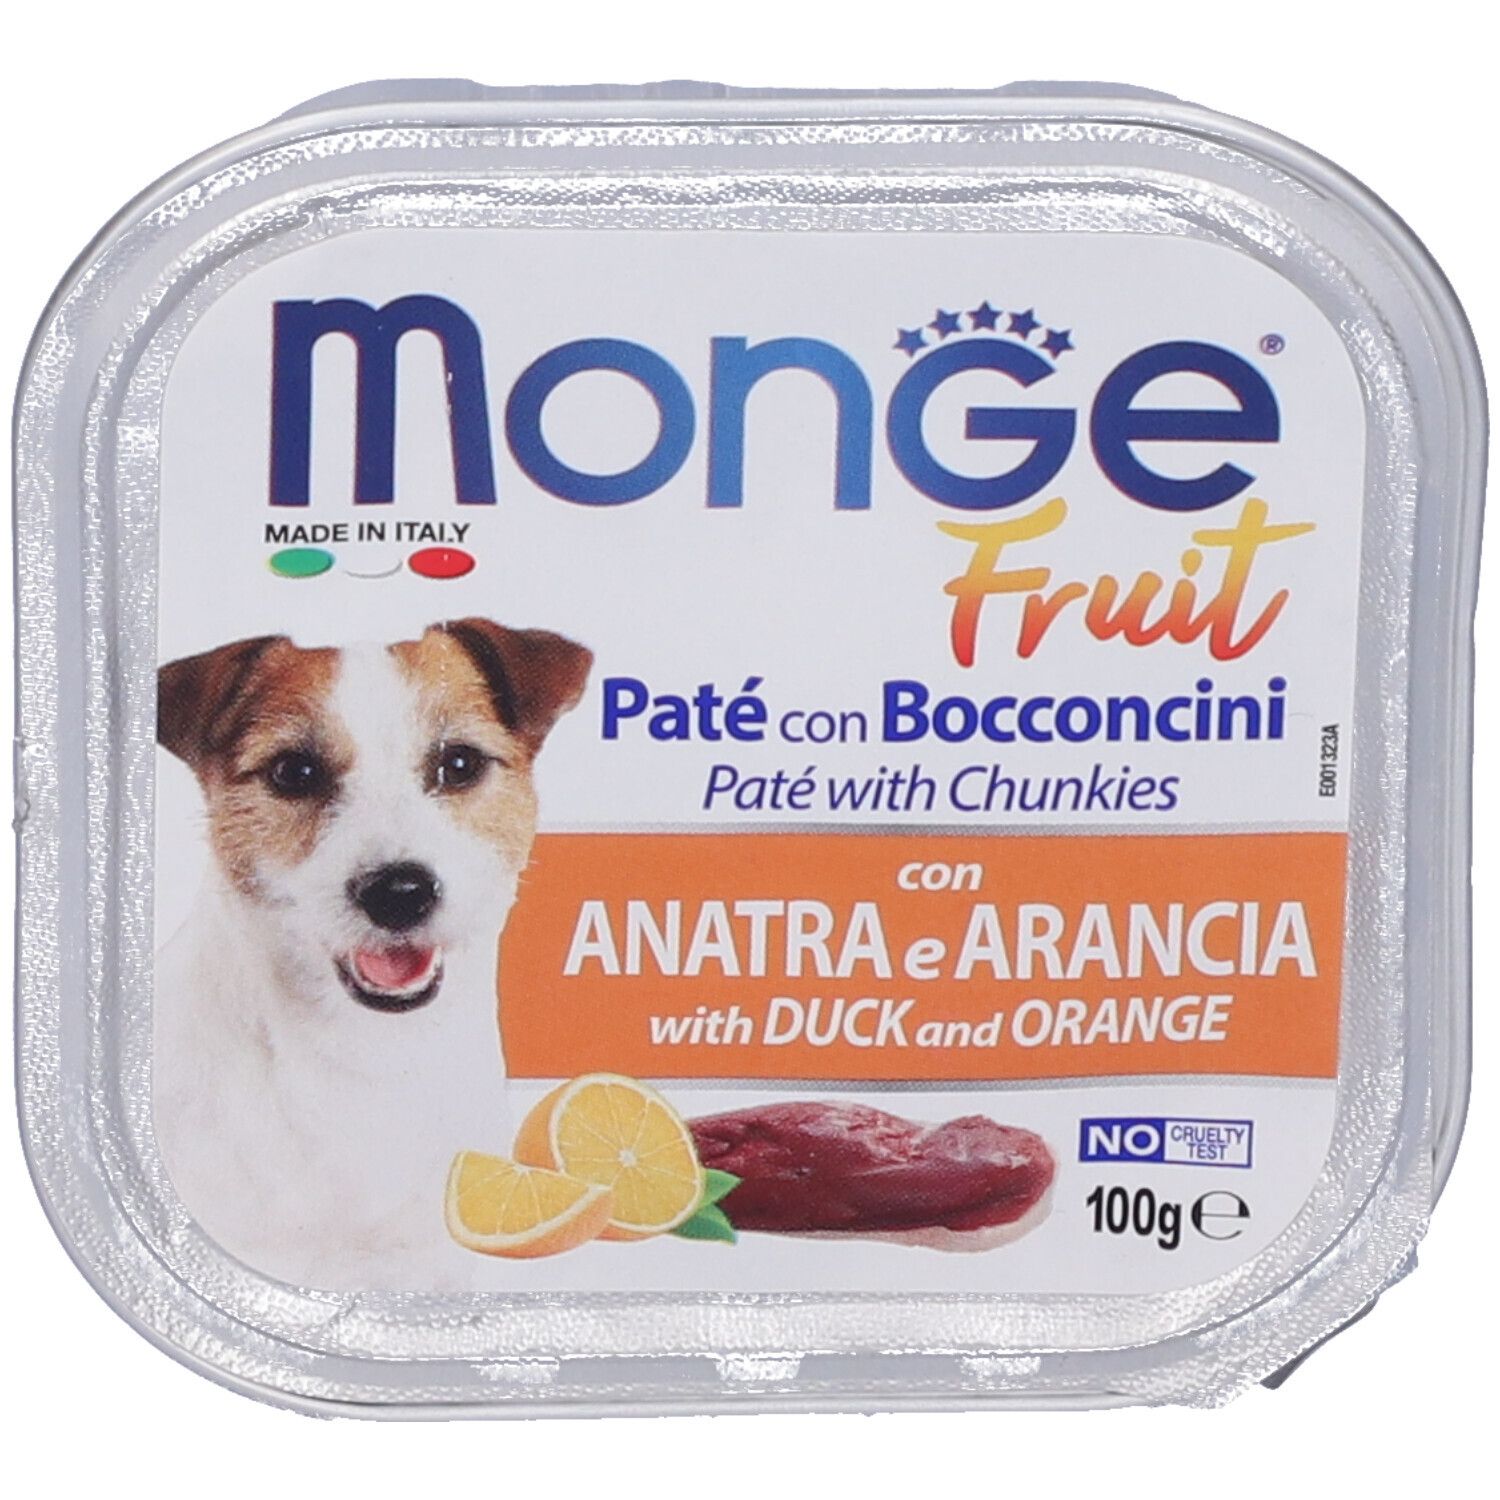 Image of Monge Fruit Cane Anatra&Arancia